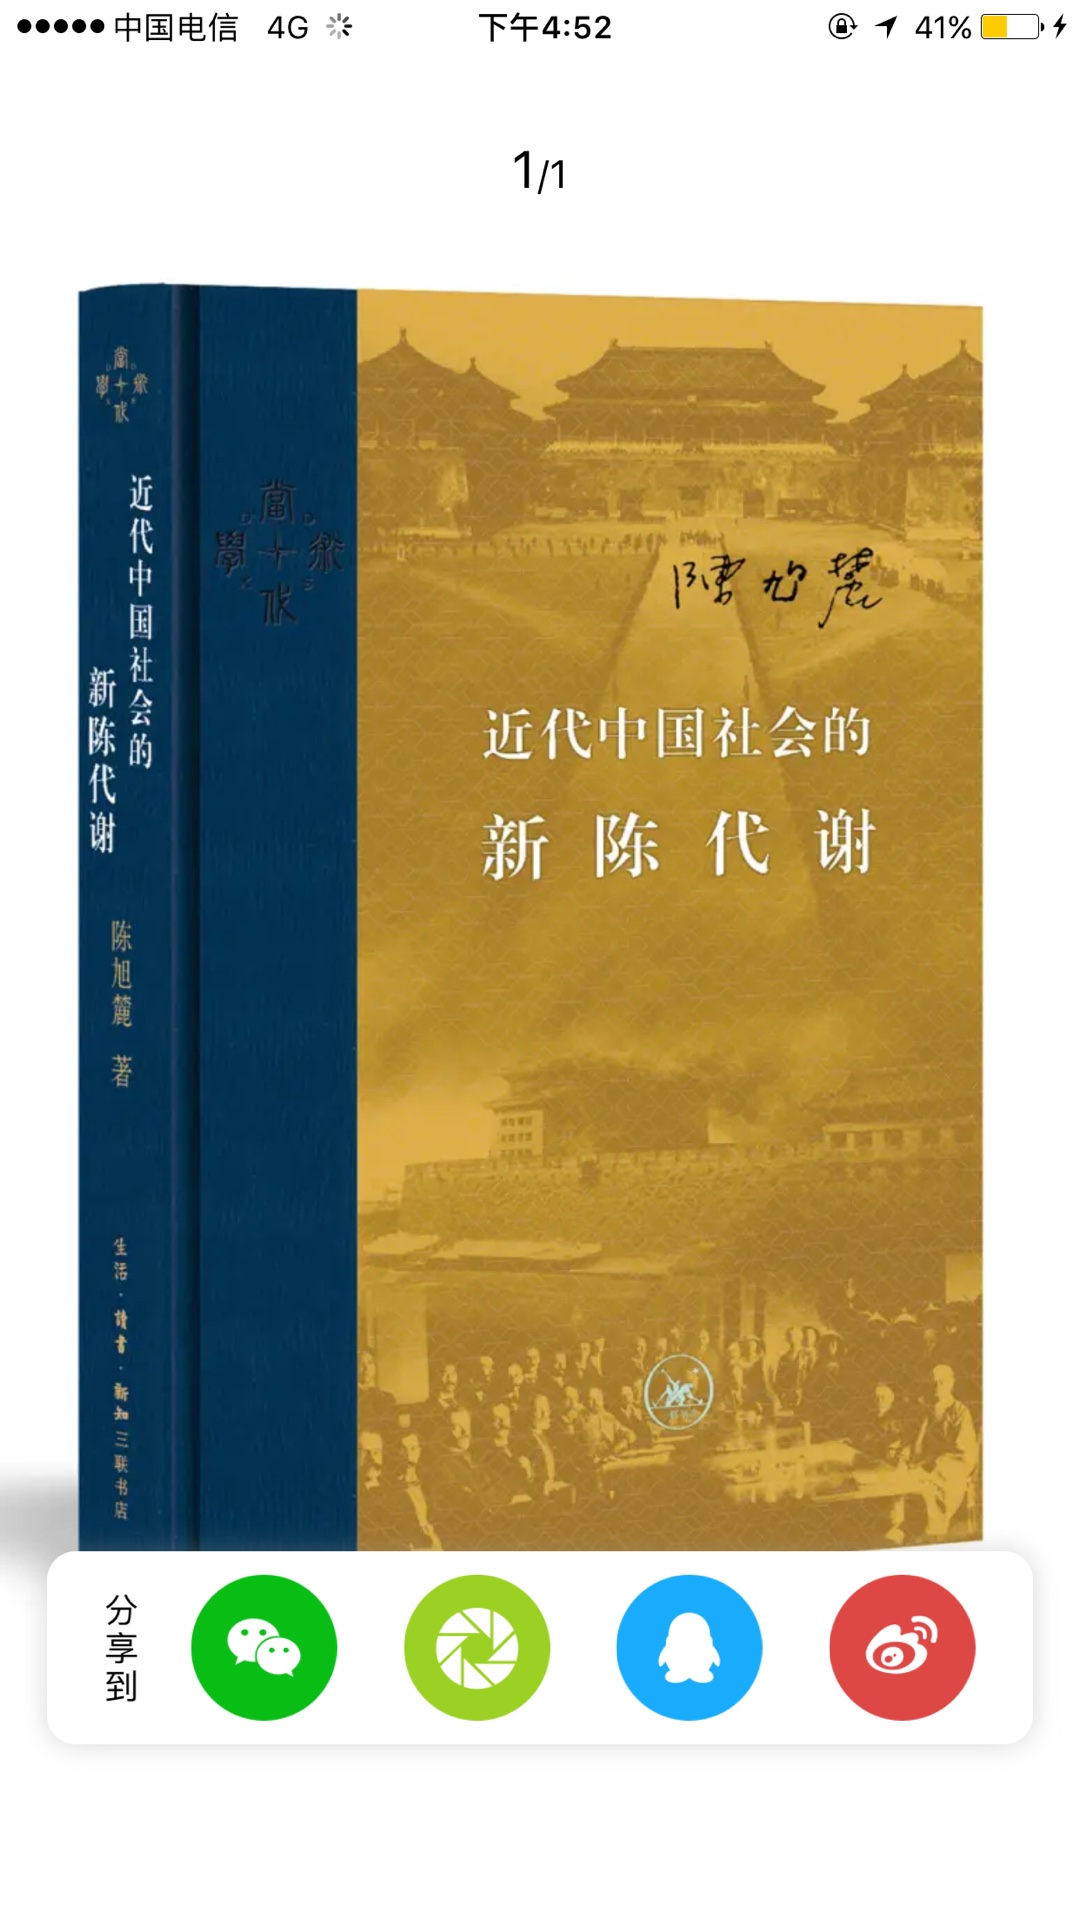 这套丛书非常不错，据说下版要出《中国历史通论了